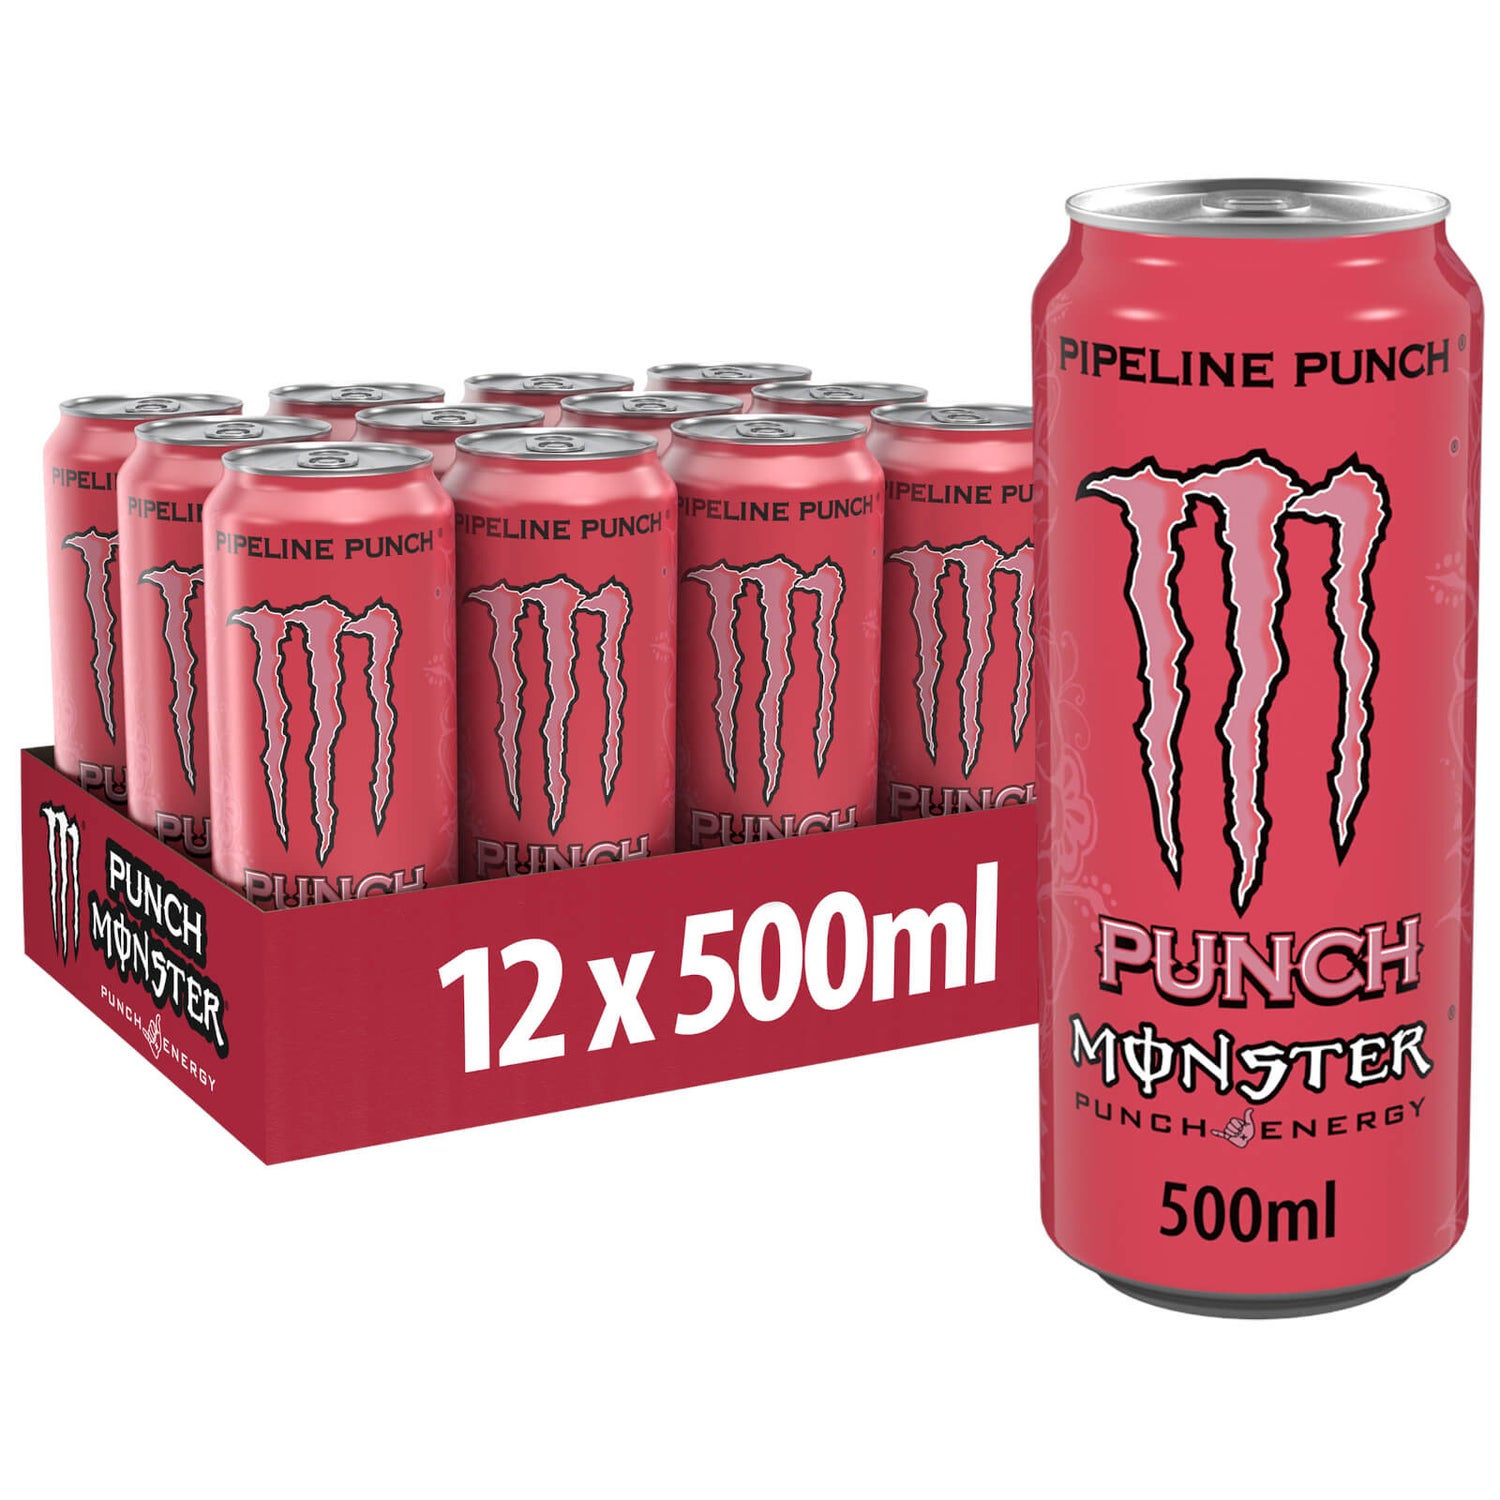 Monster Pipeline Punch 12 x 500ml